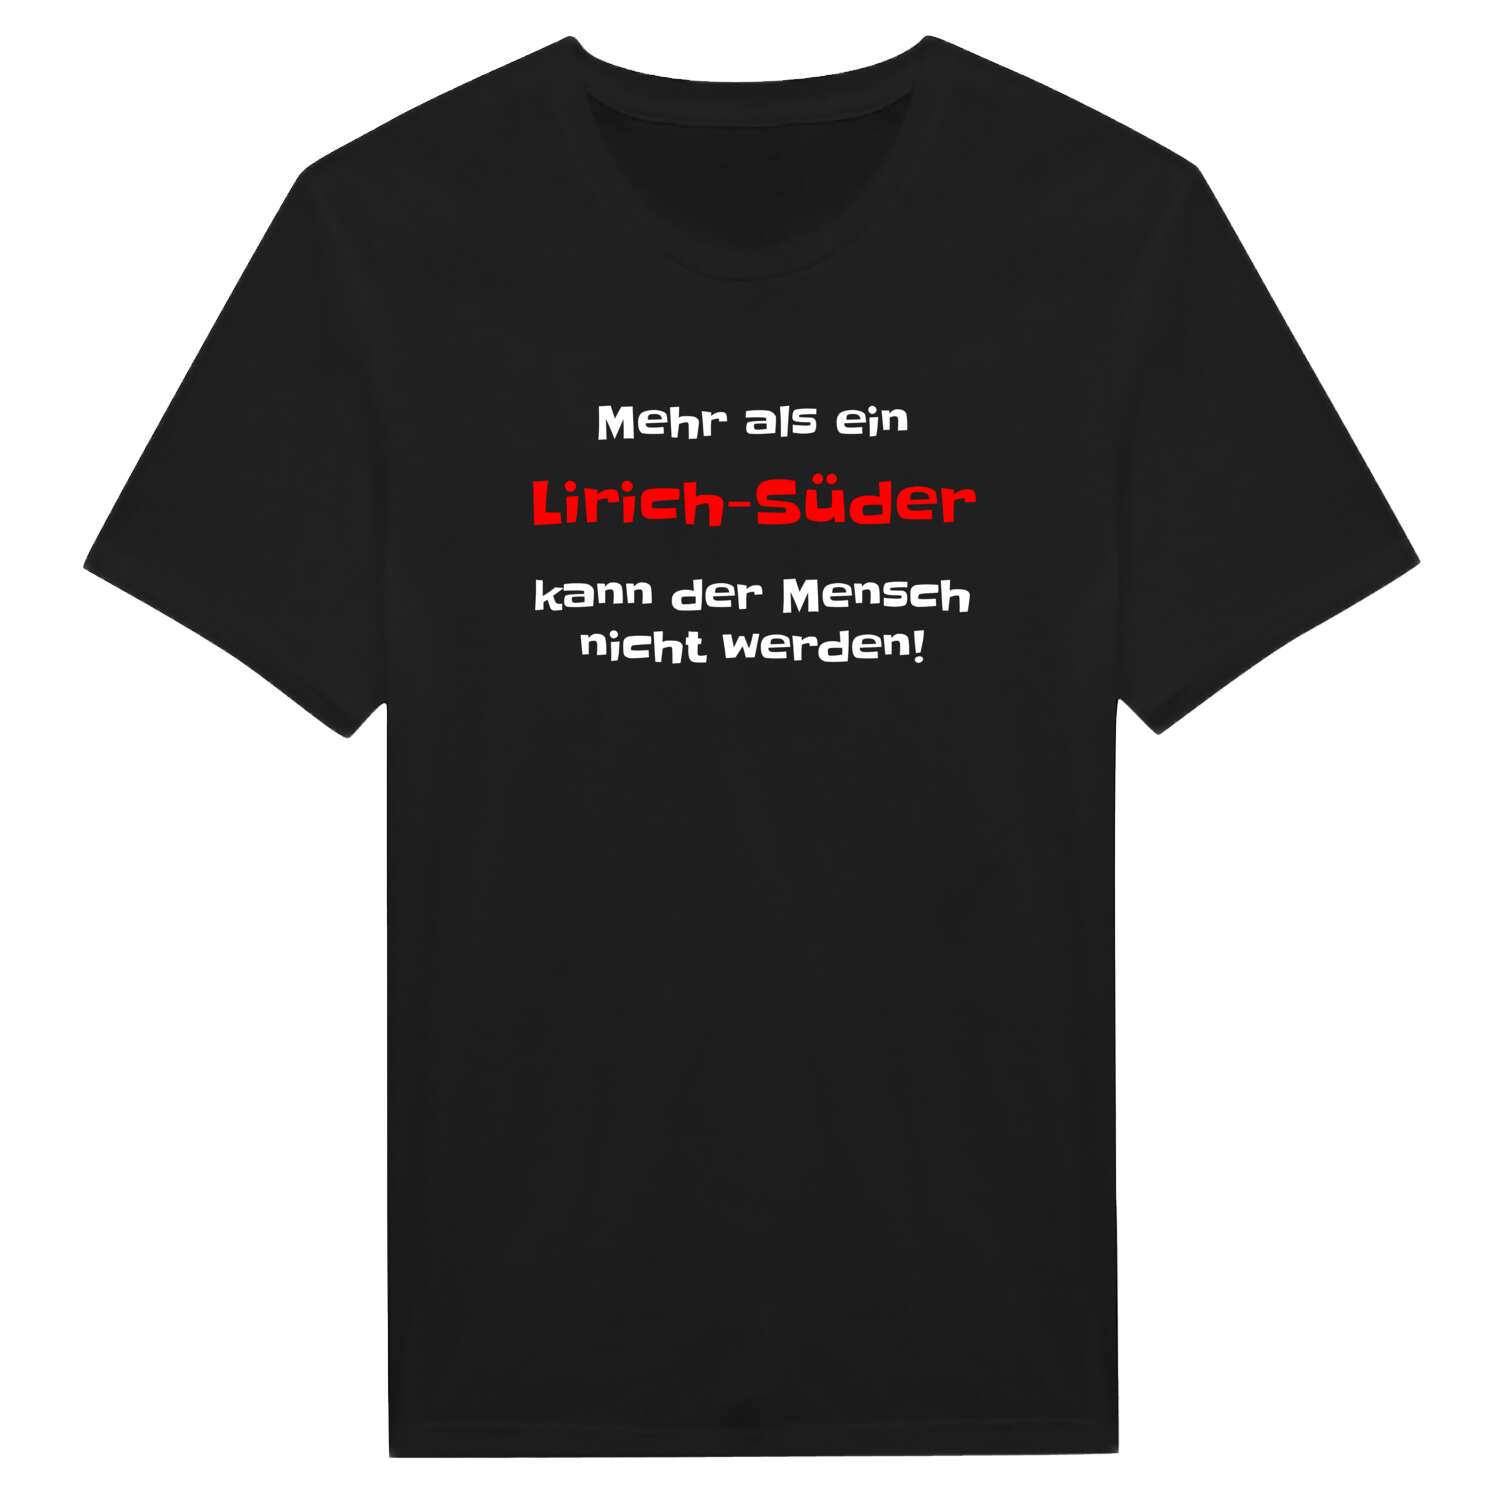 Lirich-Süd T-Shirt »Mehr als ein«